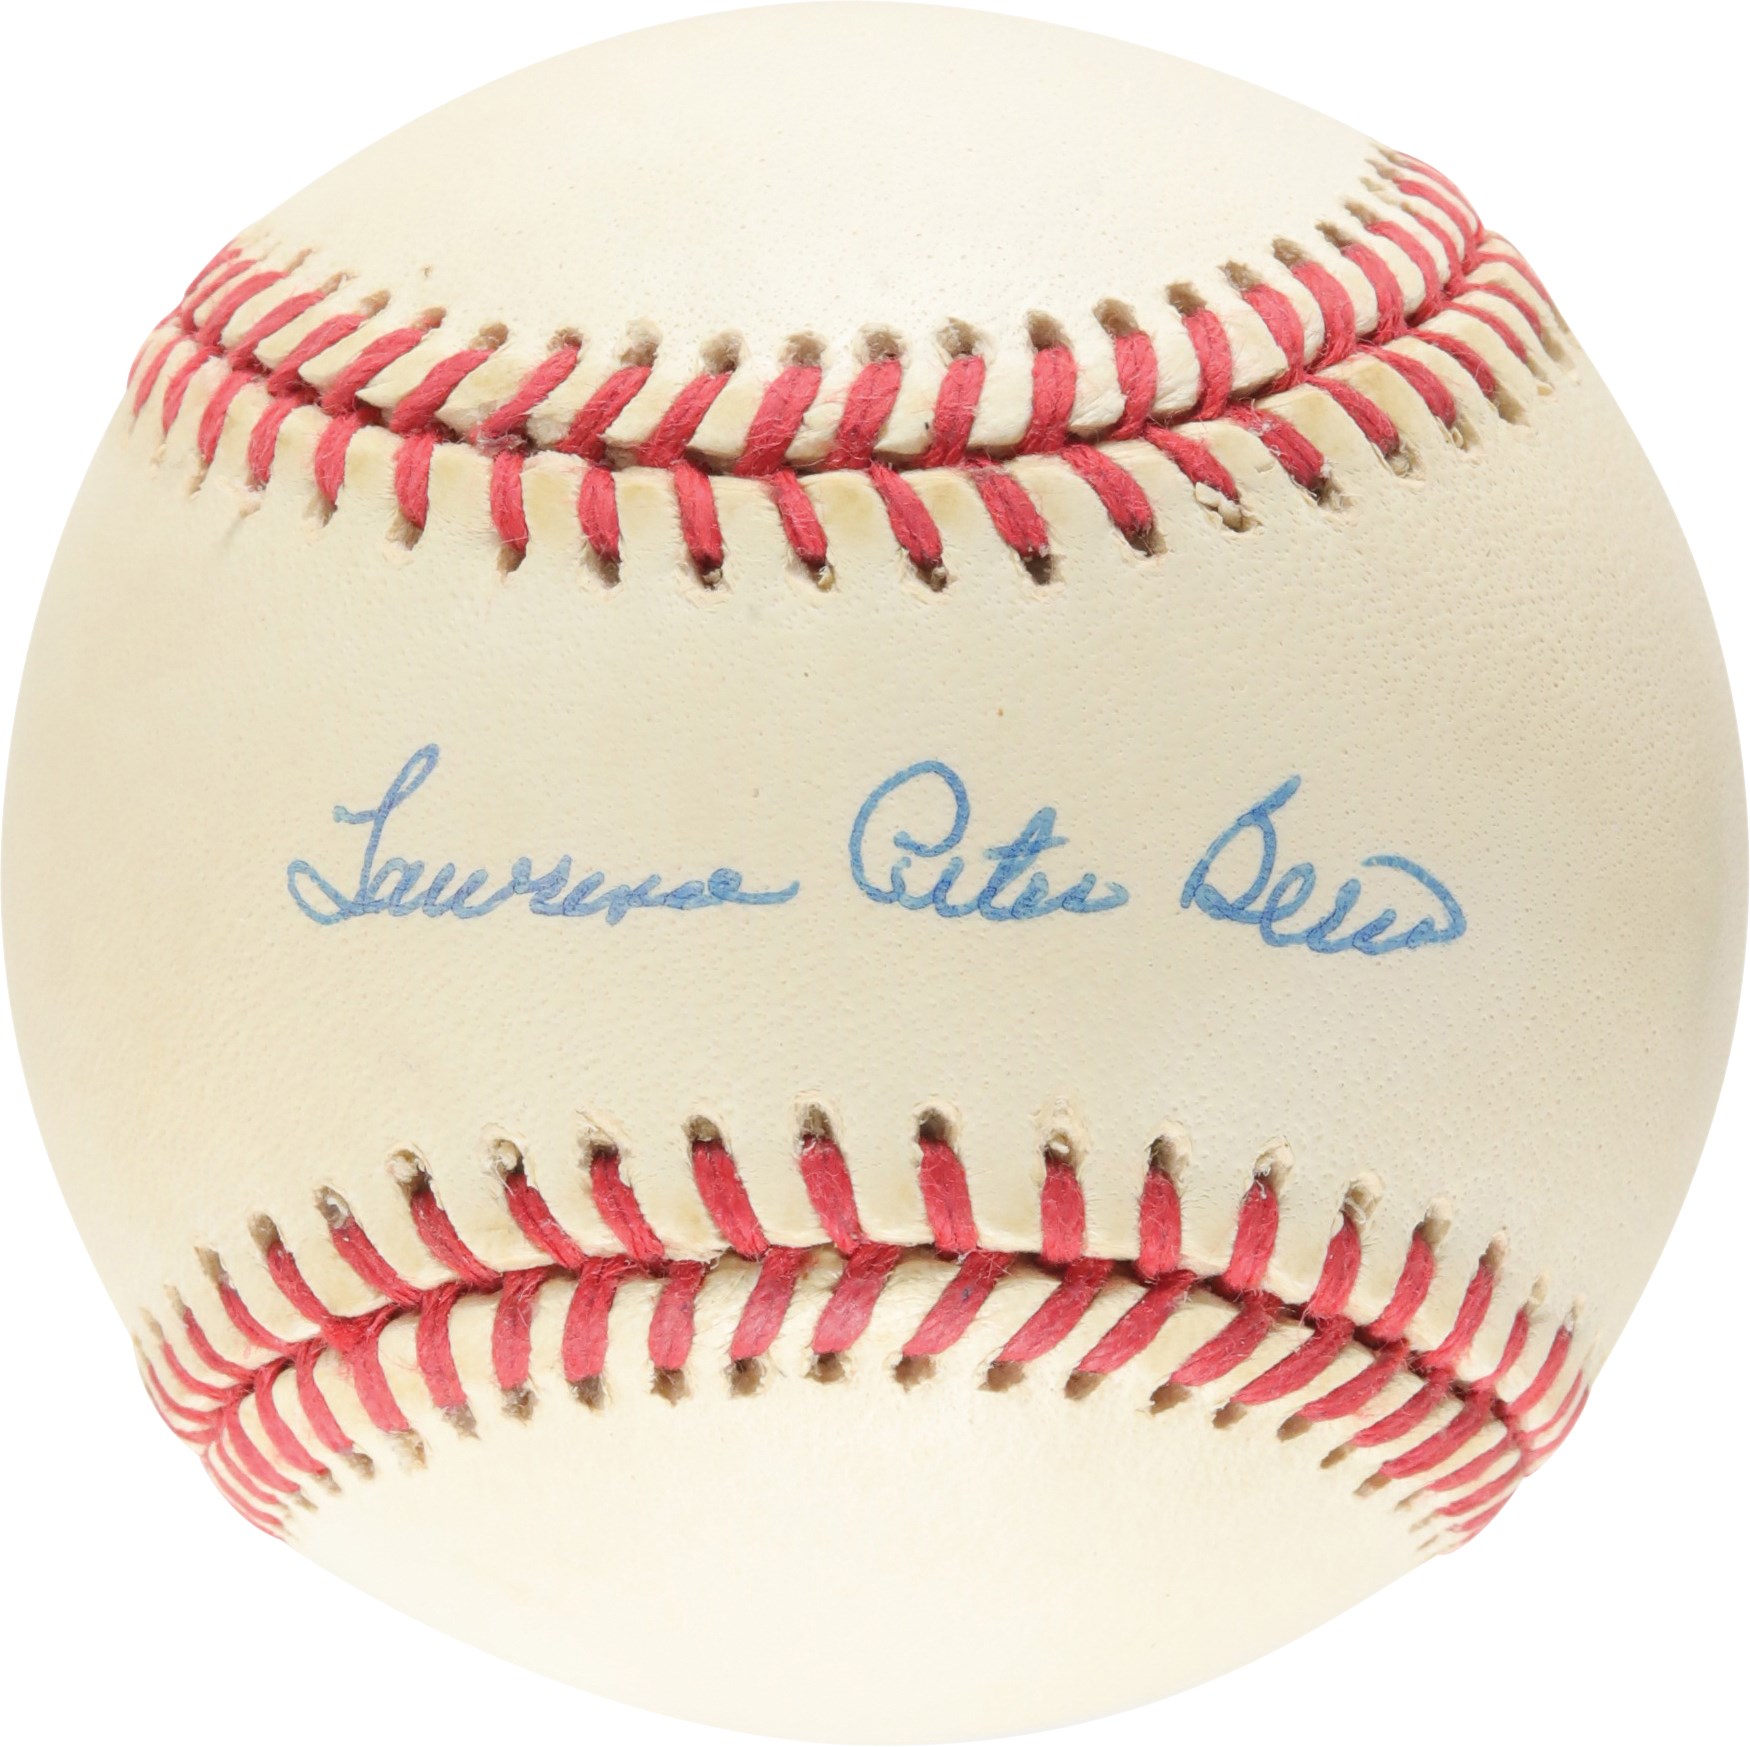 - Rare Lawrence Peter Berra Full Name Single-Signed Baseball